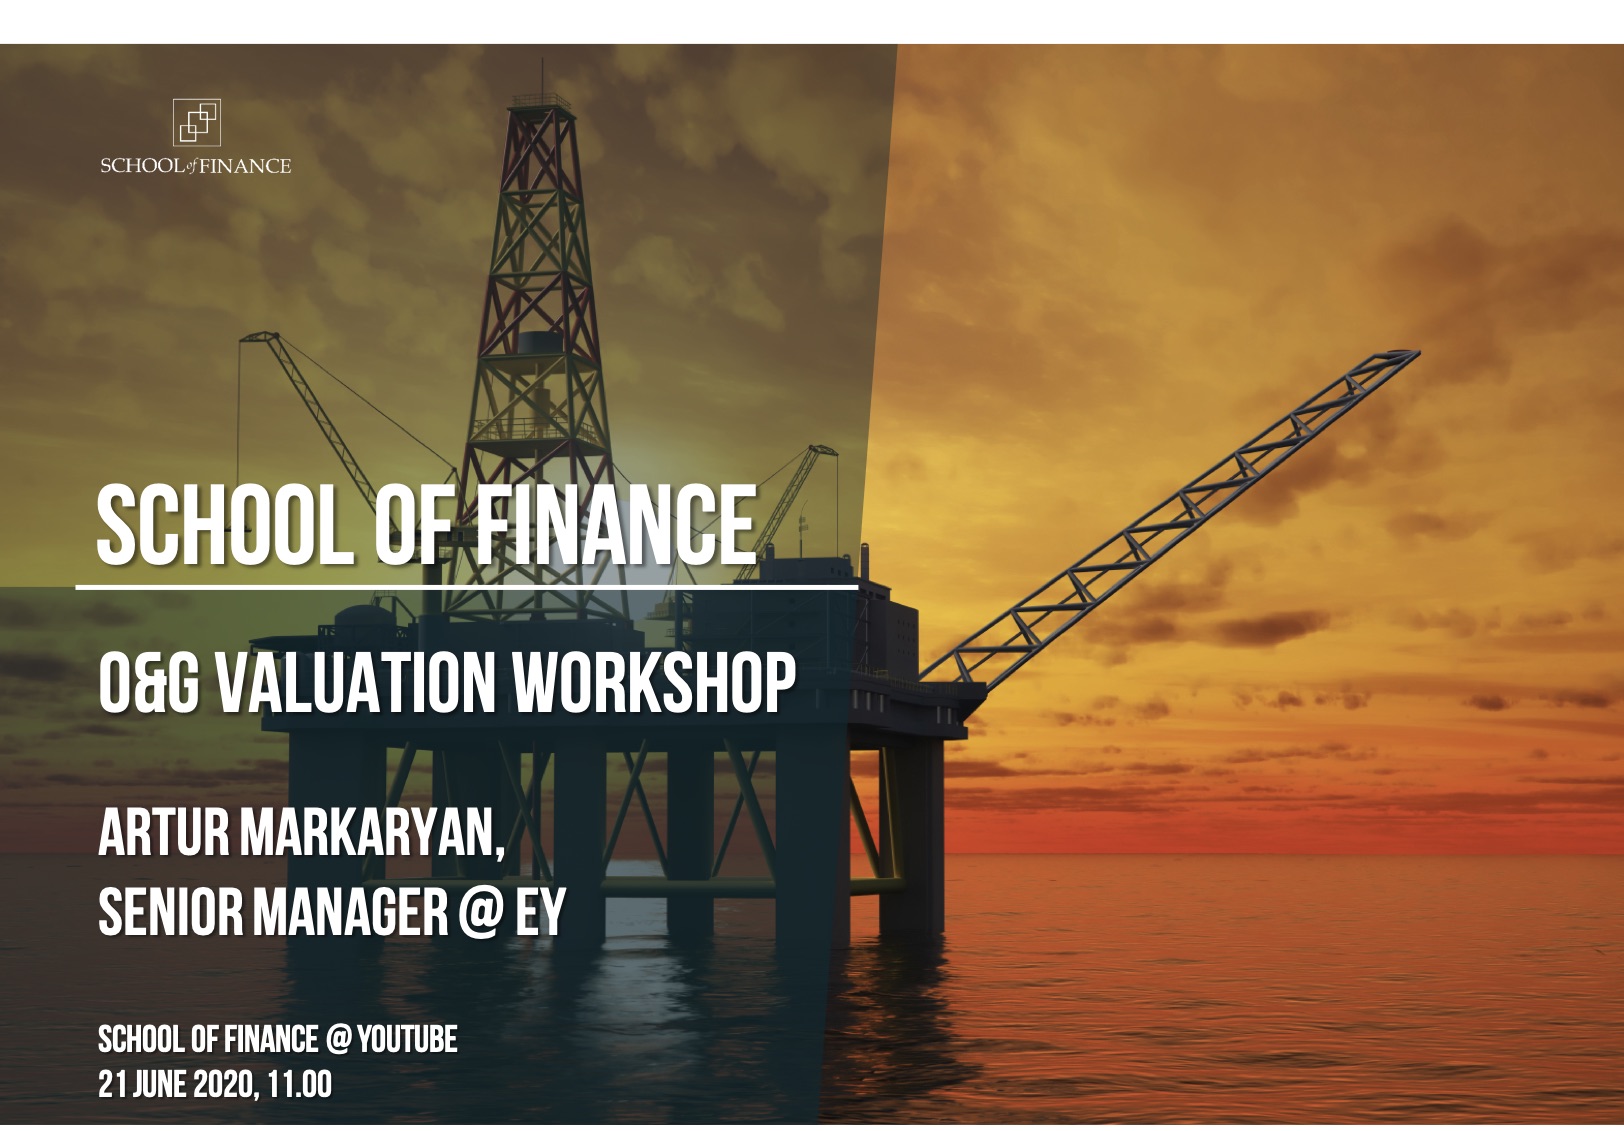 Oil&amp;amp;Gas Valuation Workshop: Мероприятие от команды EY в Школе финансов